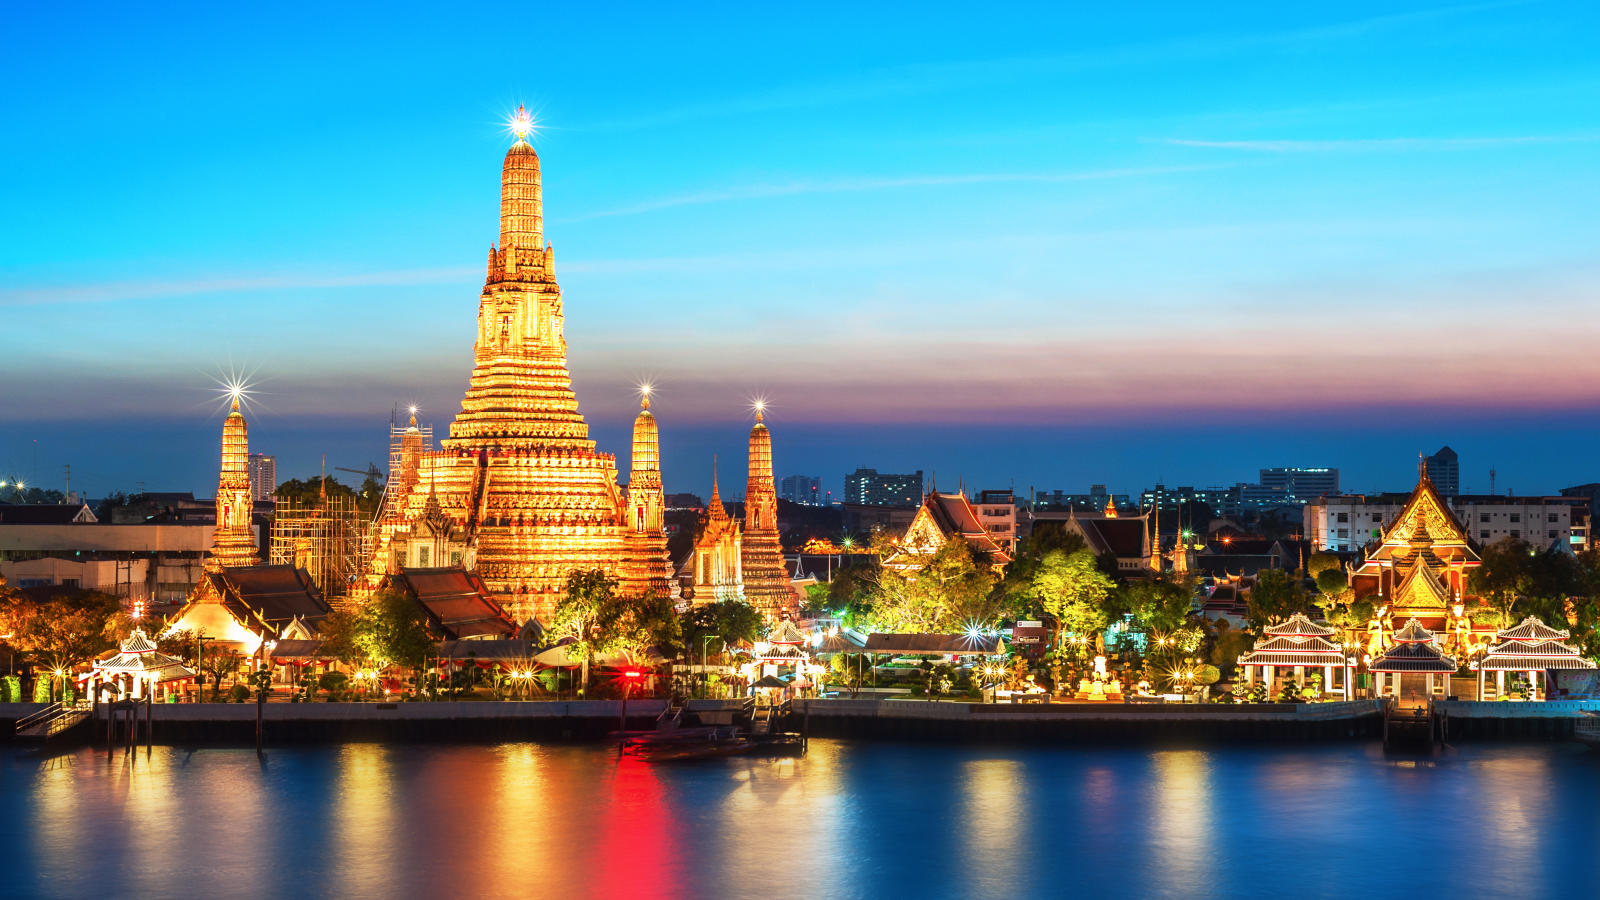 تایلند | قیمت تور تایلند | تور ارزان تایلند | تور لحظه آخری تایلند | بهترین زمان مسافرت به تایلند